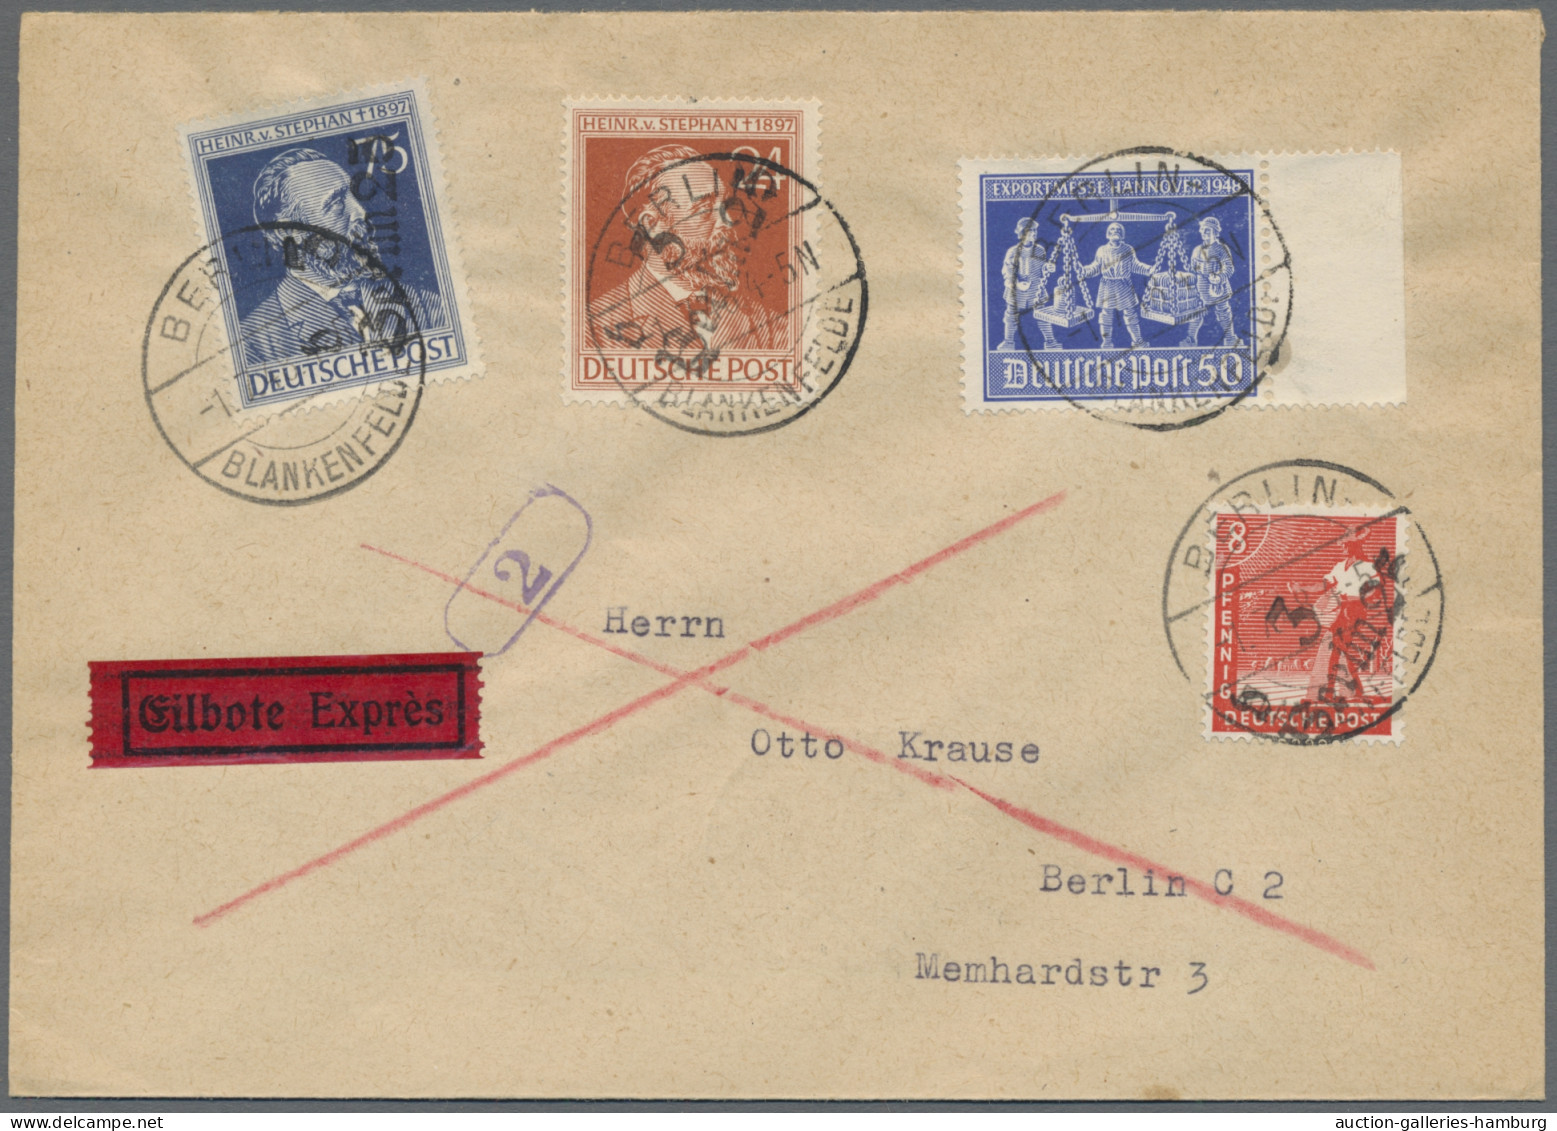 Sowj. Zone - Bezirkshandstempel: 1948, riesengroßer Posten, offenbar aus dem Nac